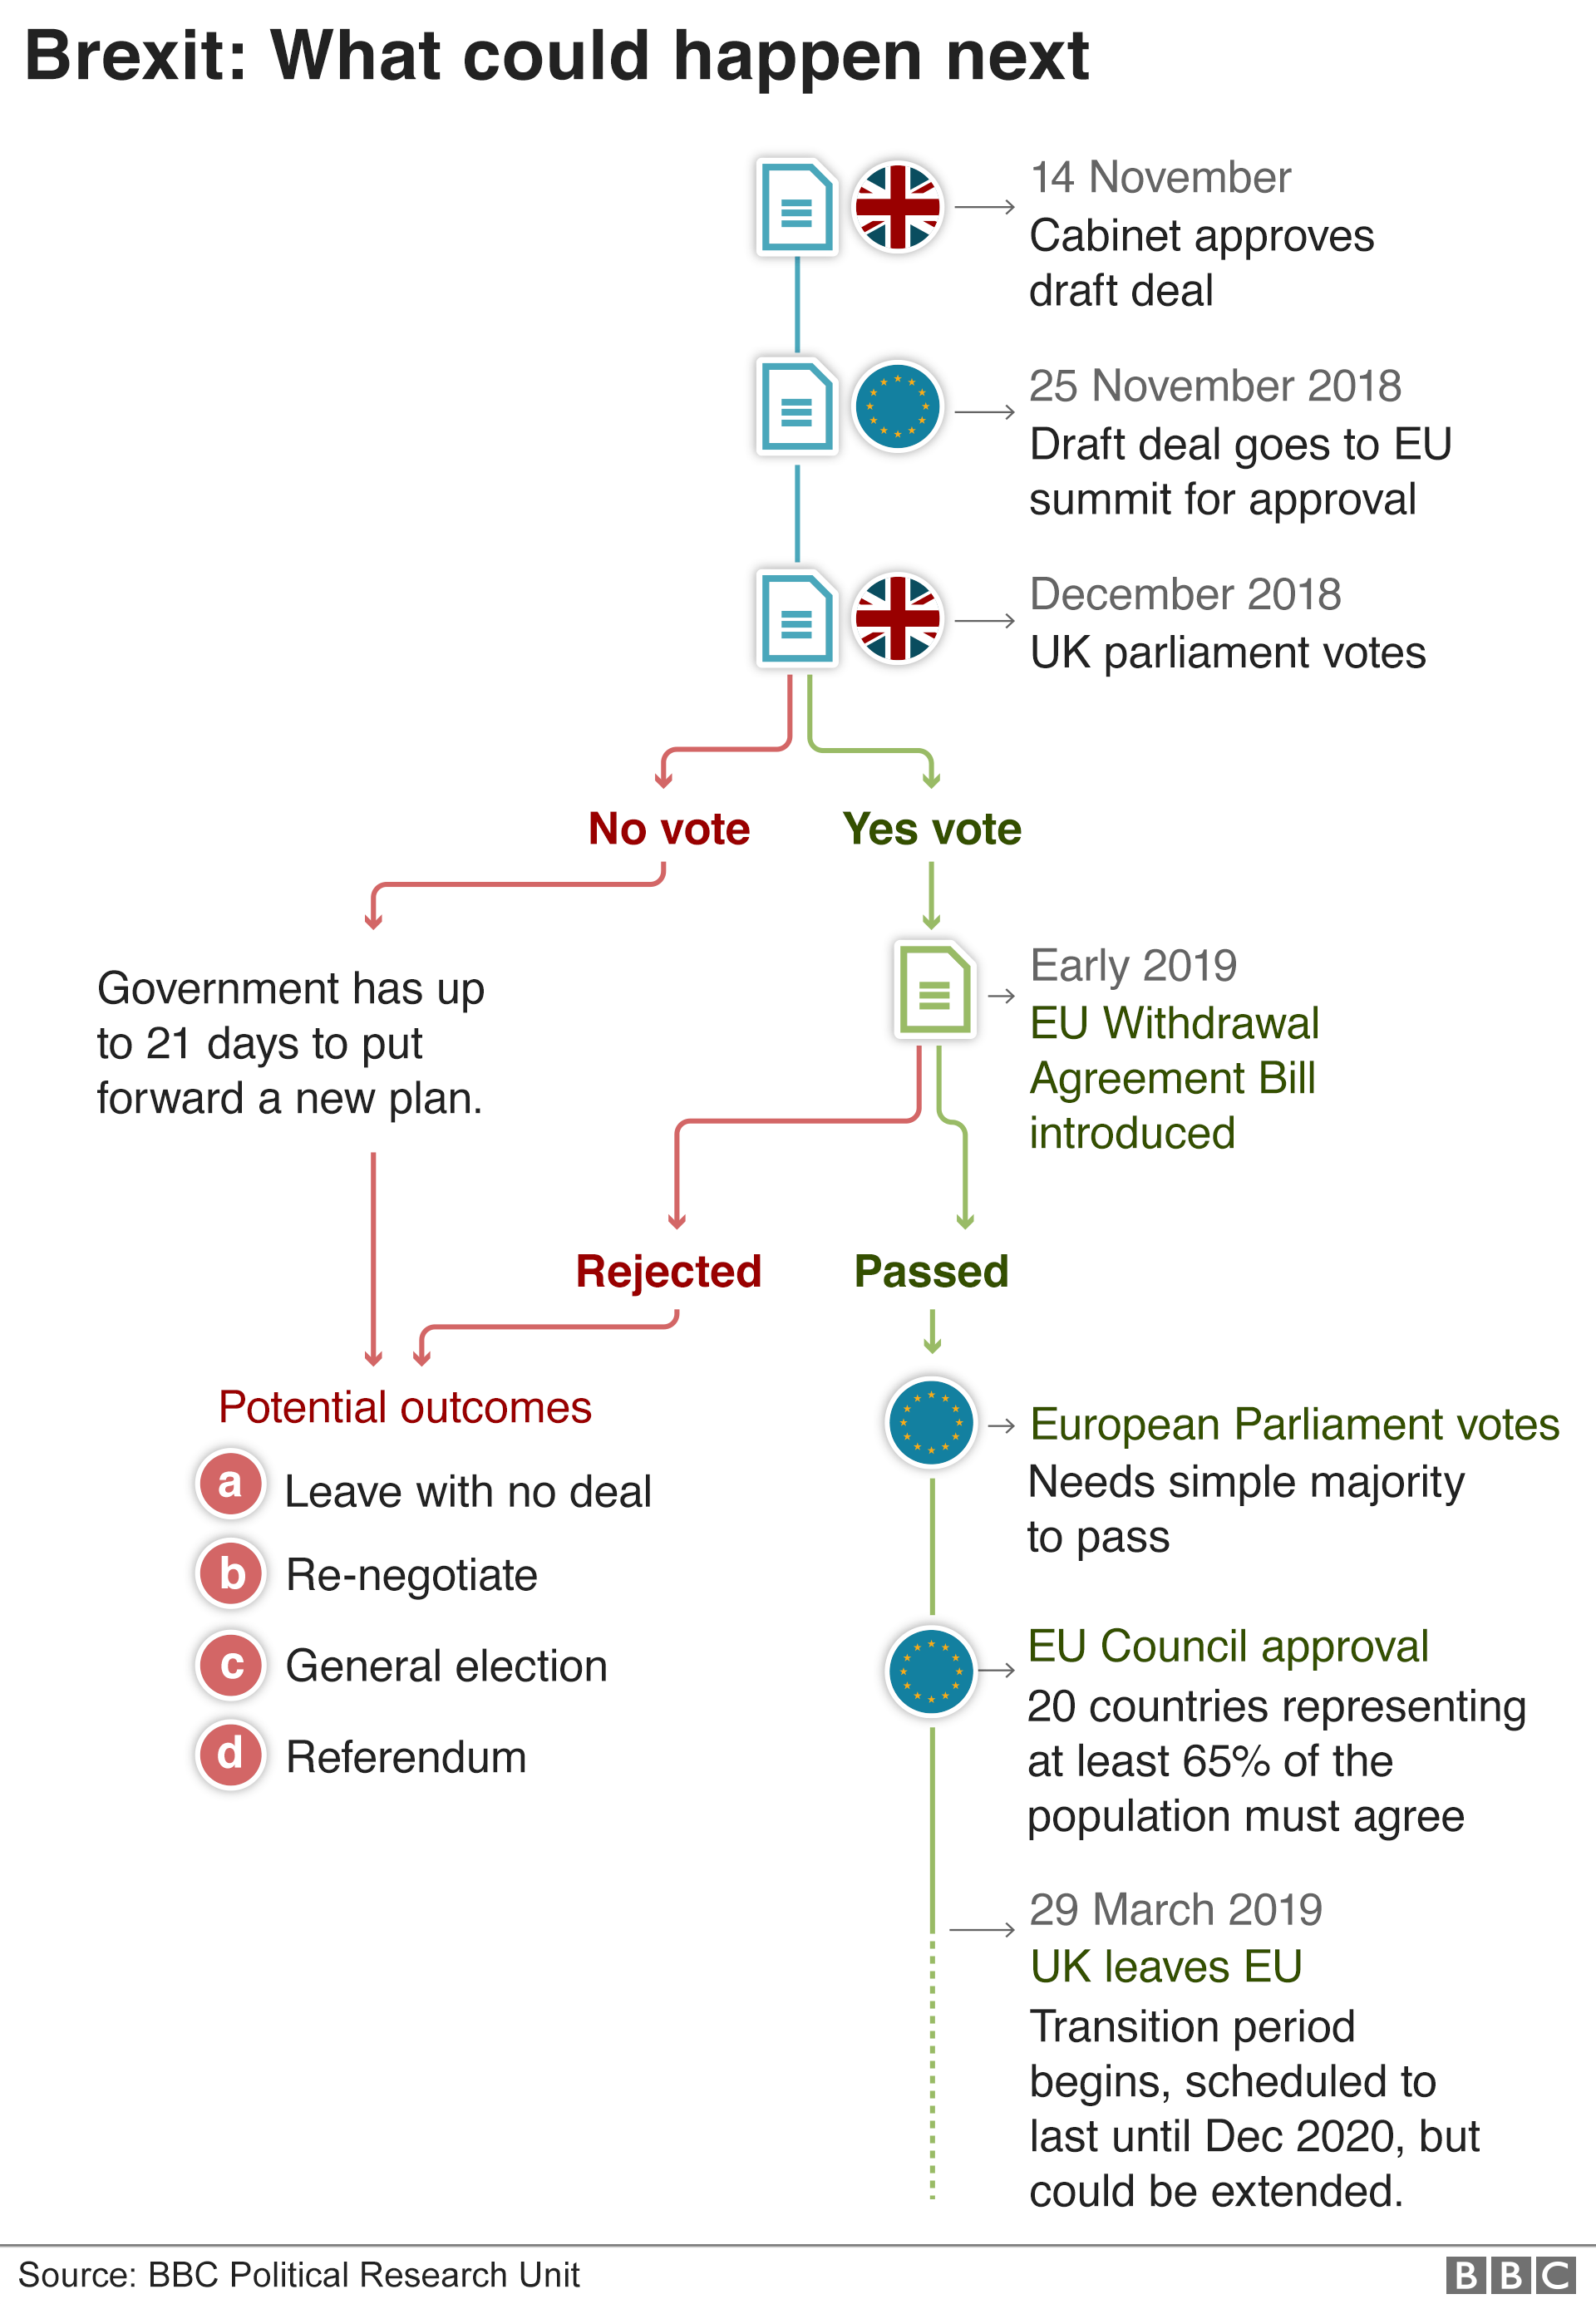 Блок-схема, показывающая, что может произойти дальше в процессе Brexit.